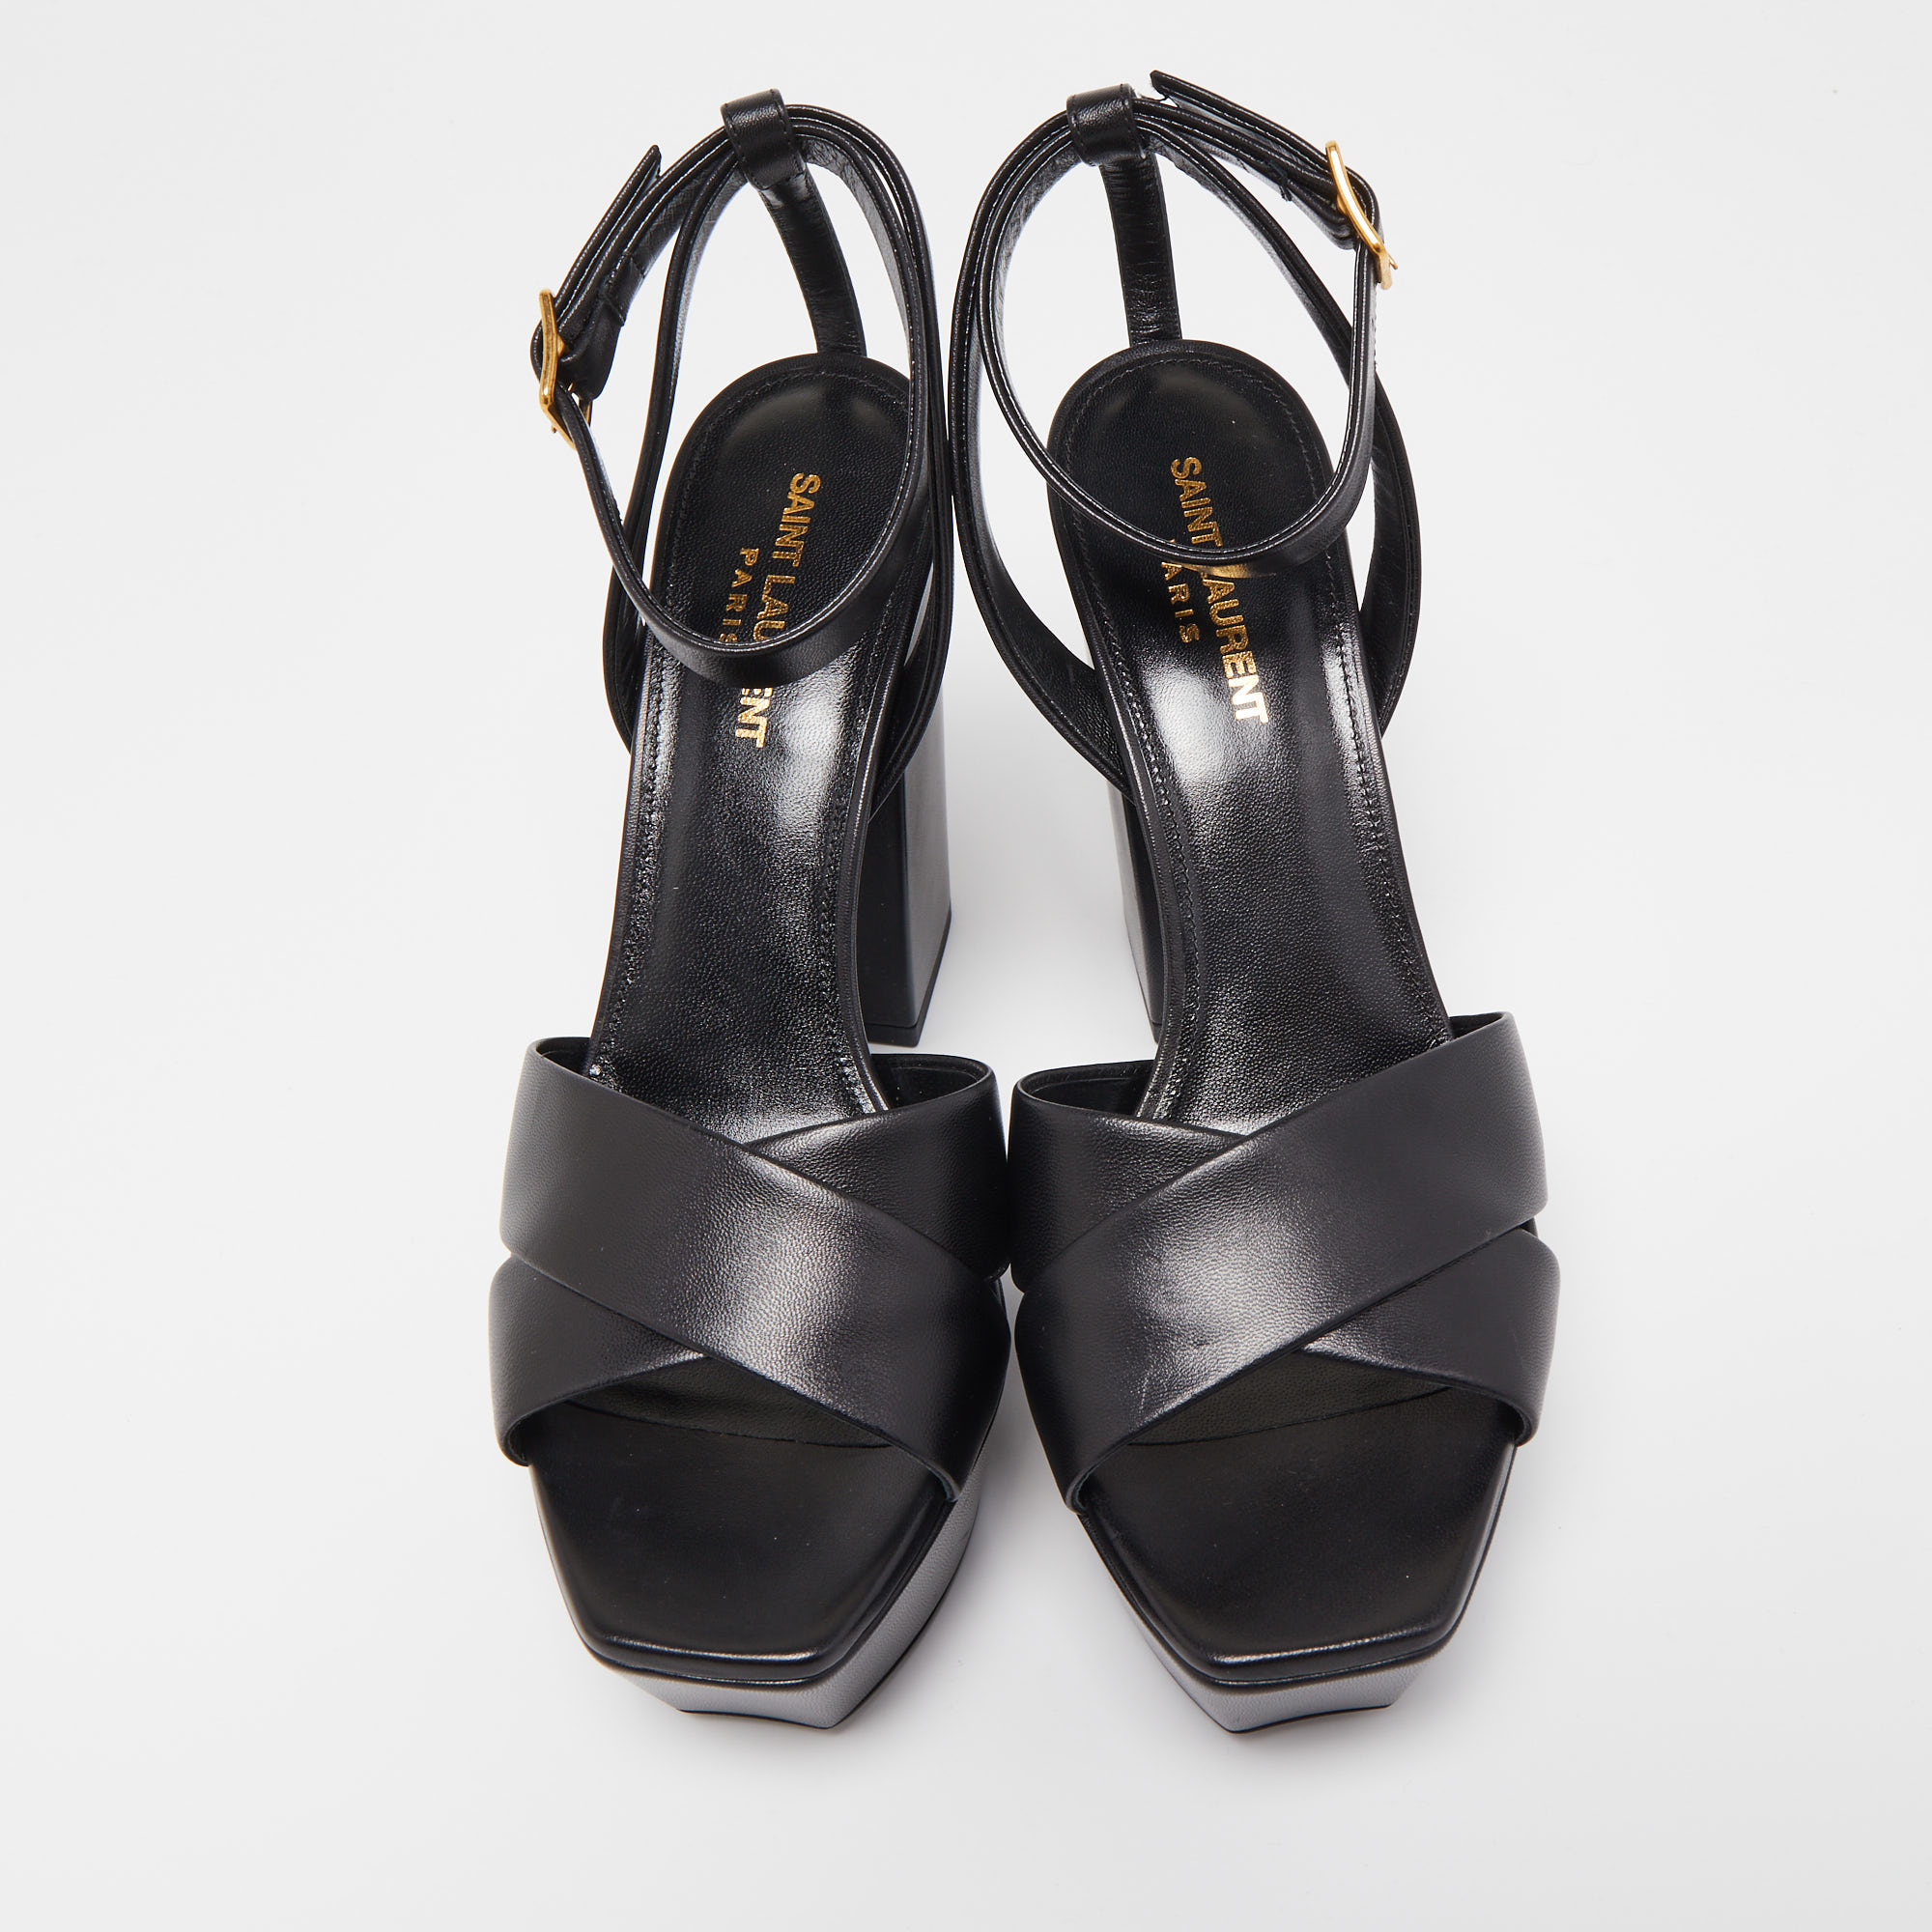 Saint Laurent Black Leather Tribute Platform Sandals Size 39.5